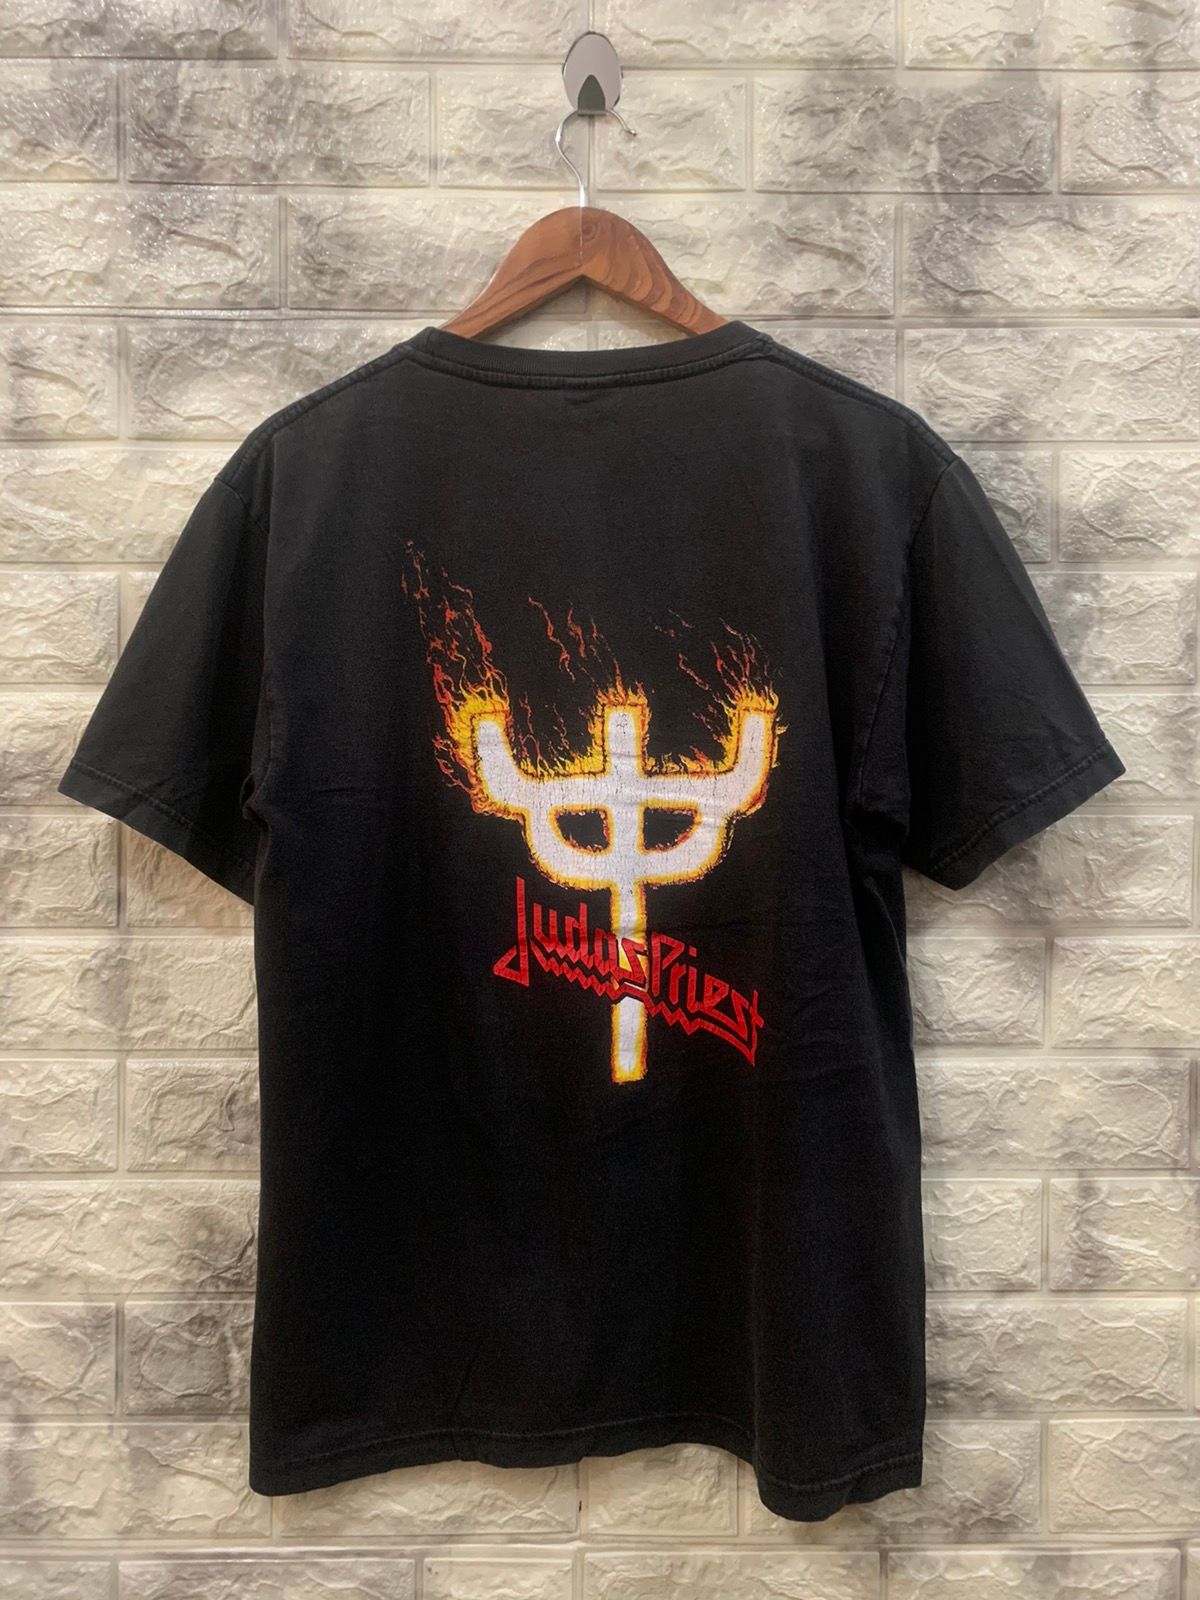 Vintage Vintage Judas priest band rock t-shirt Size US M / EU 48-50 / 2 - 2 Preview